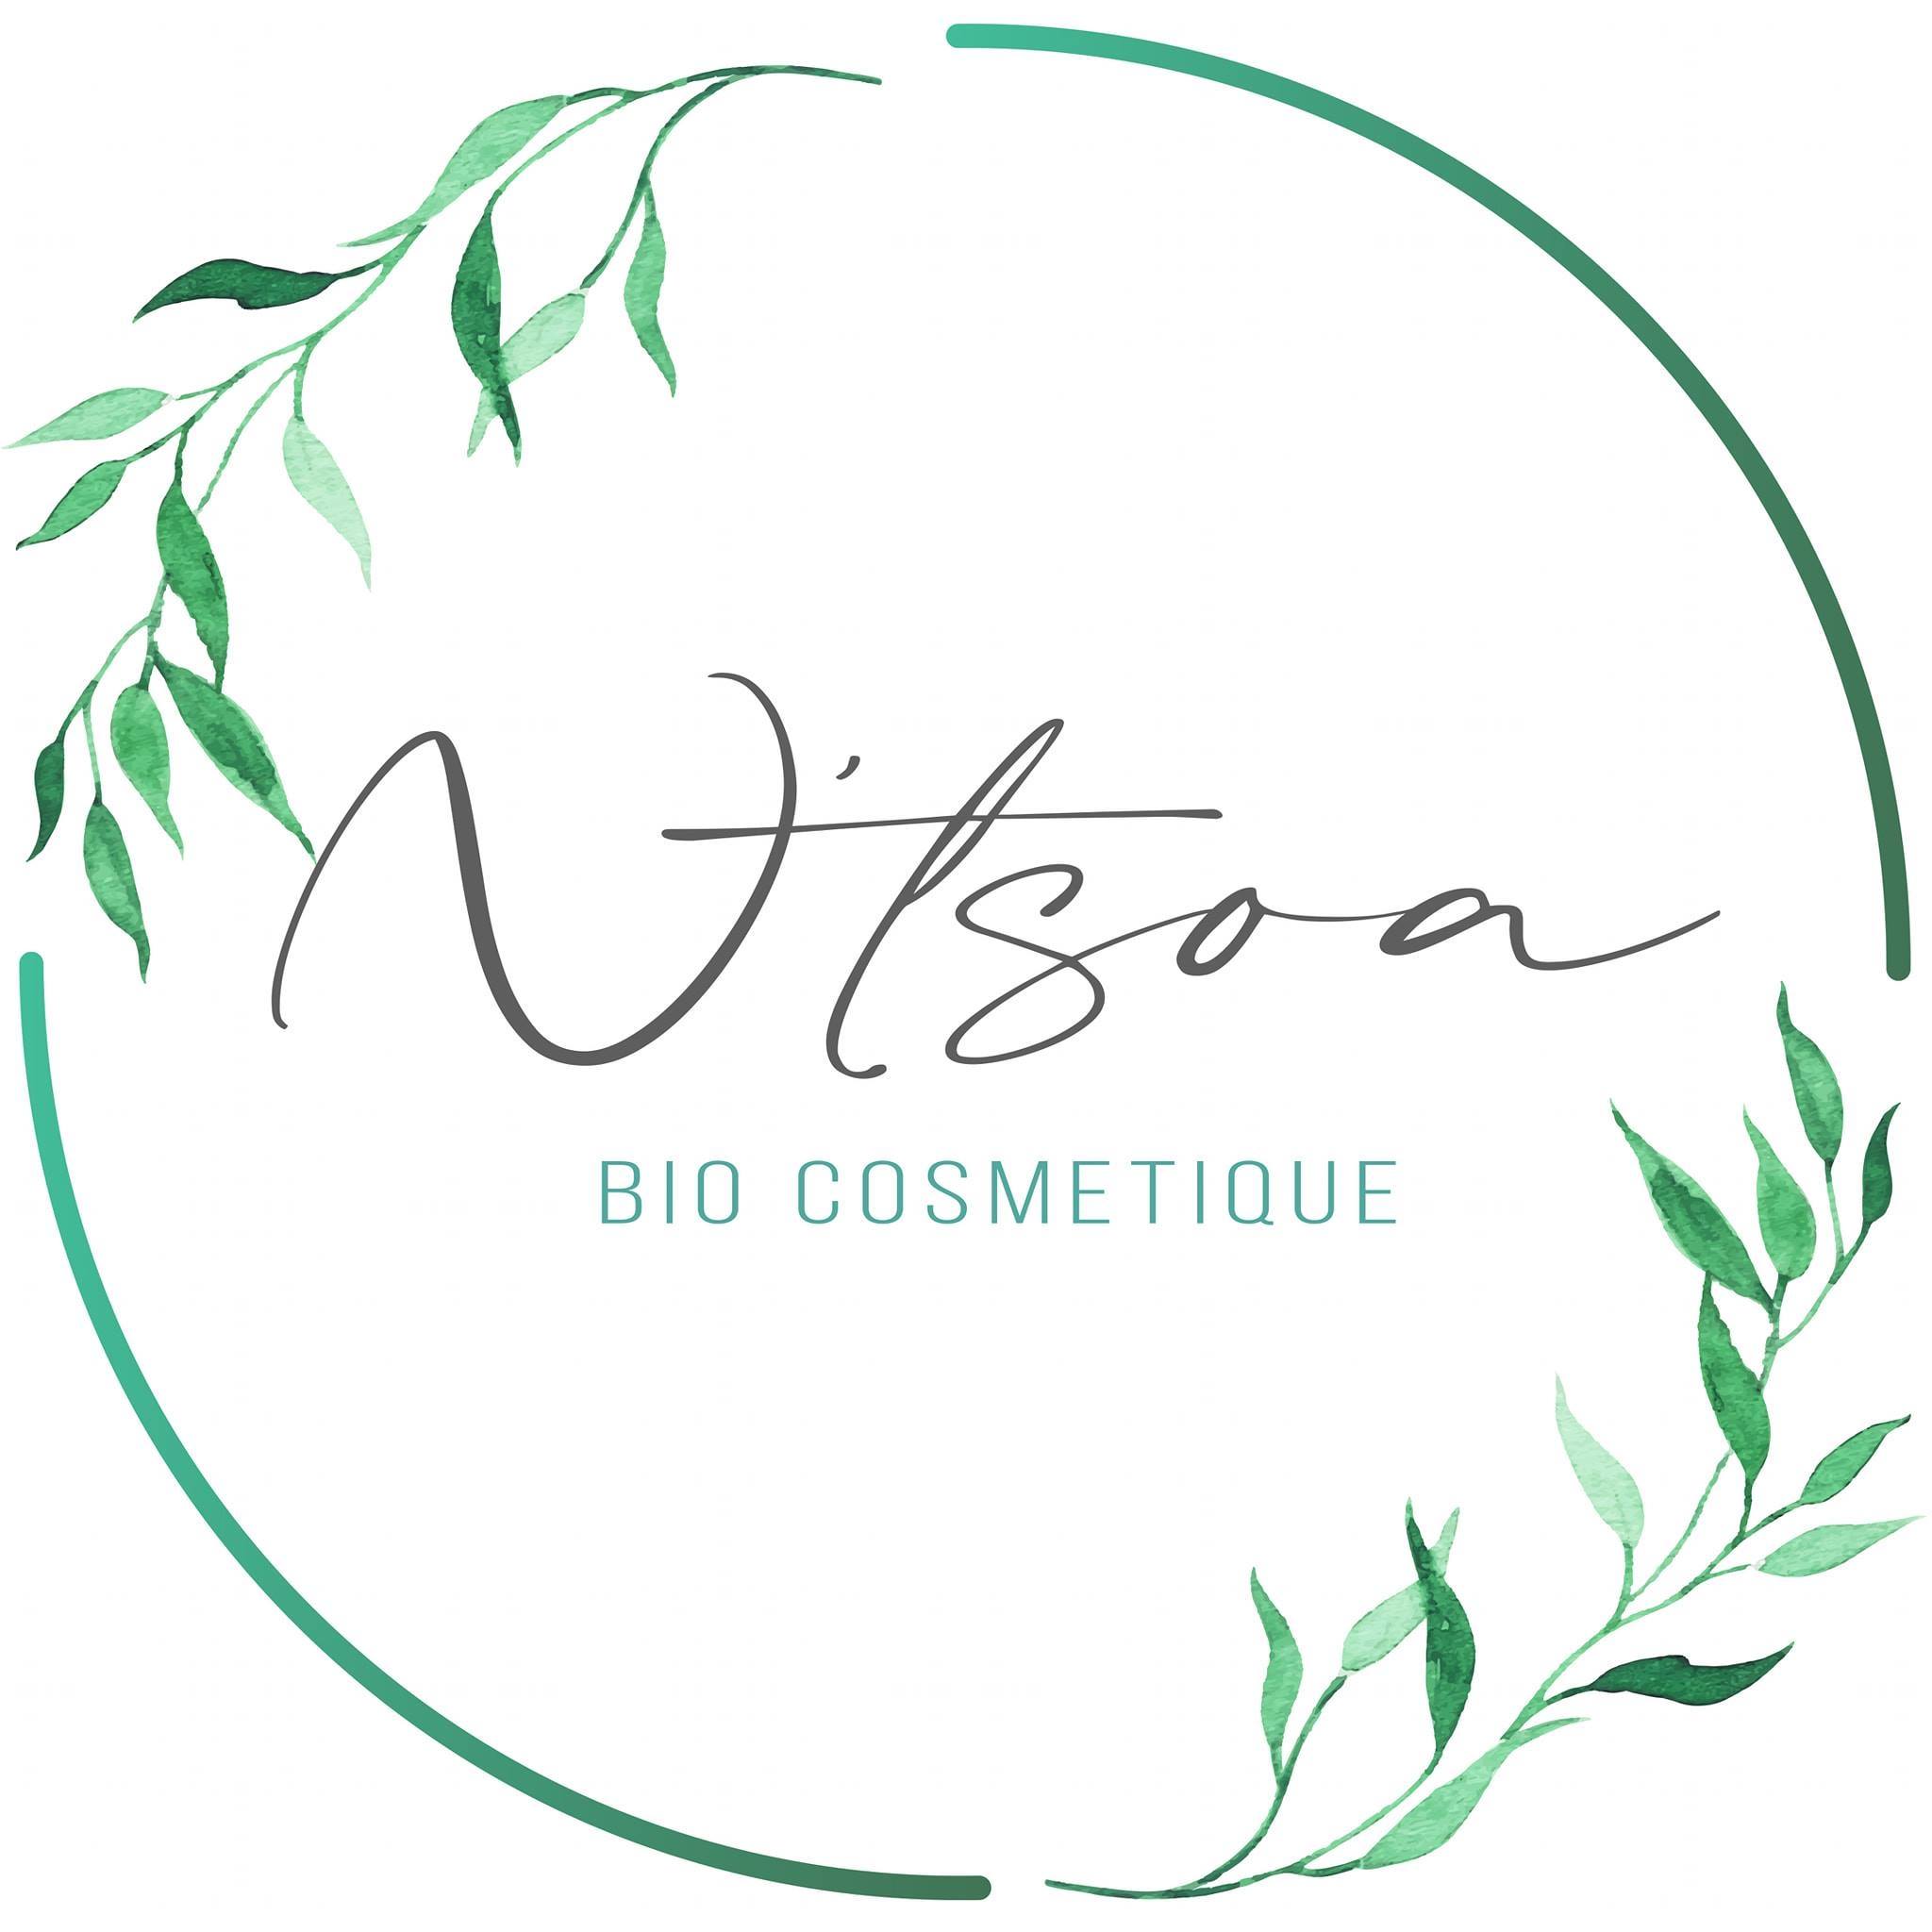 N'tsoa - Bio Cosmétique